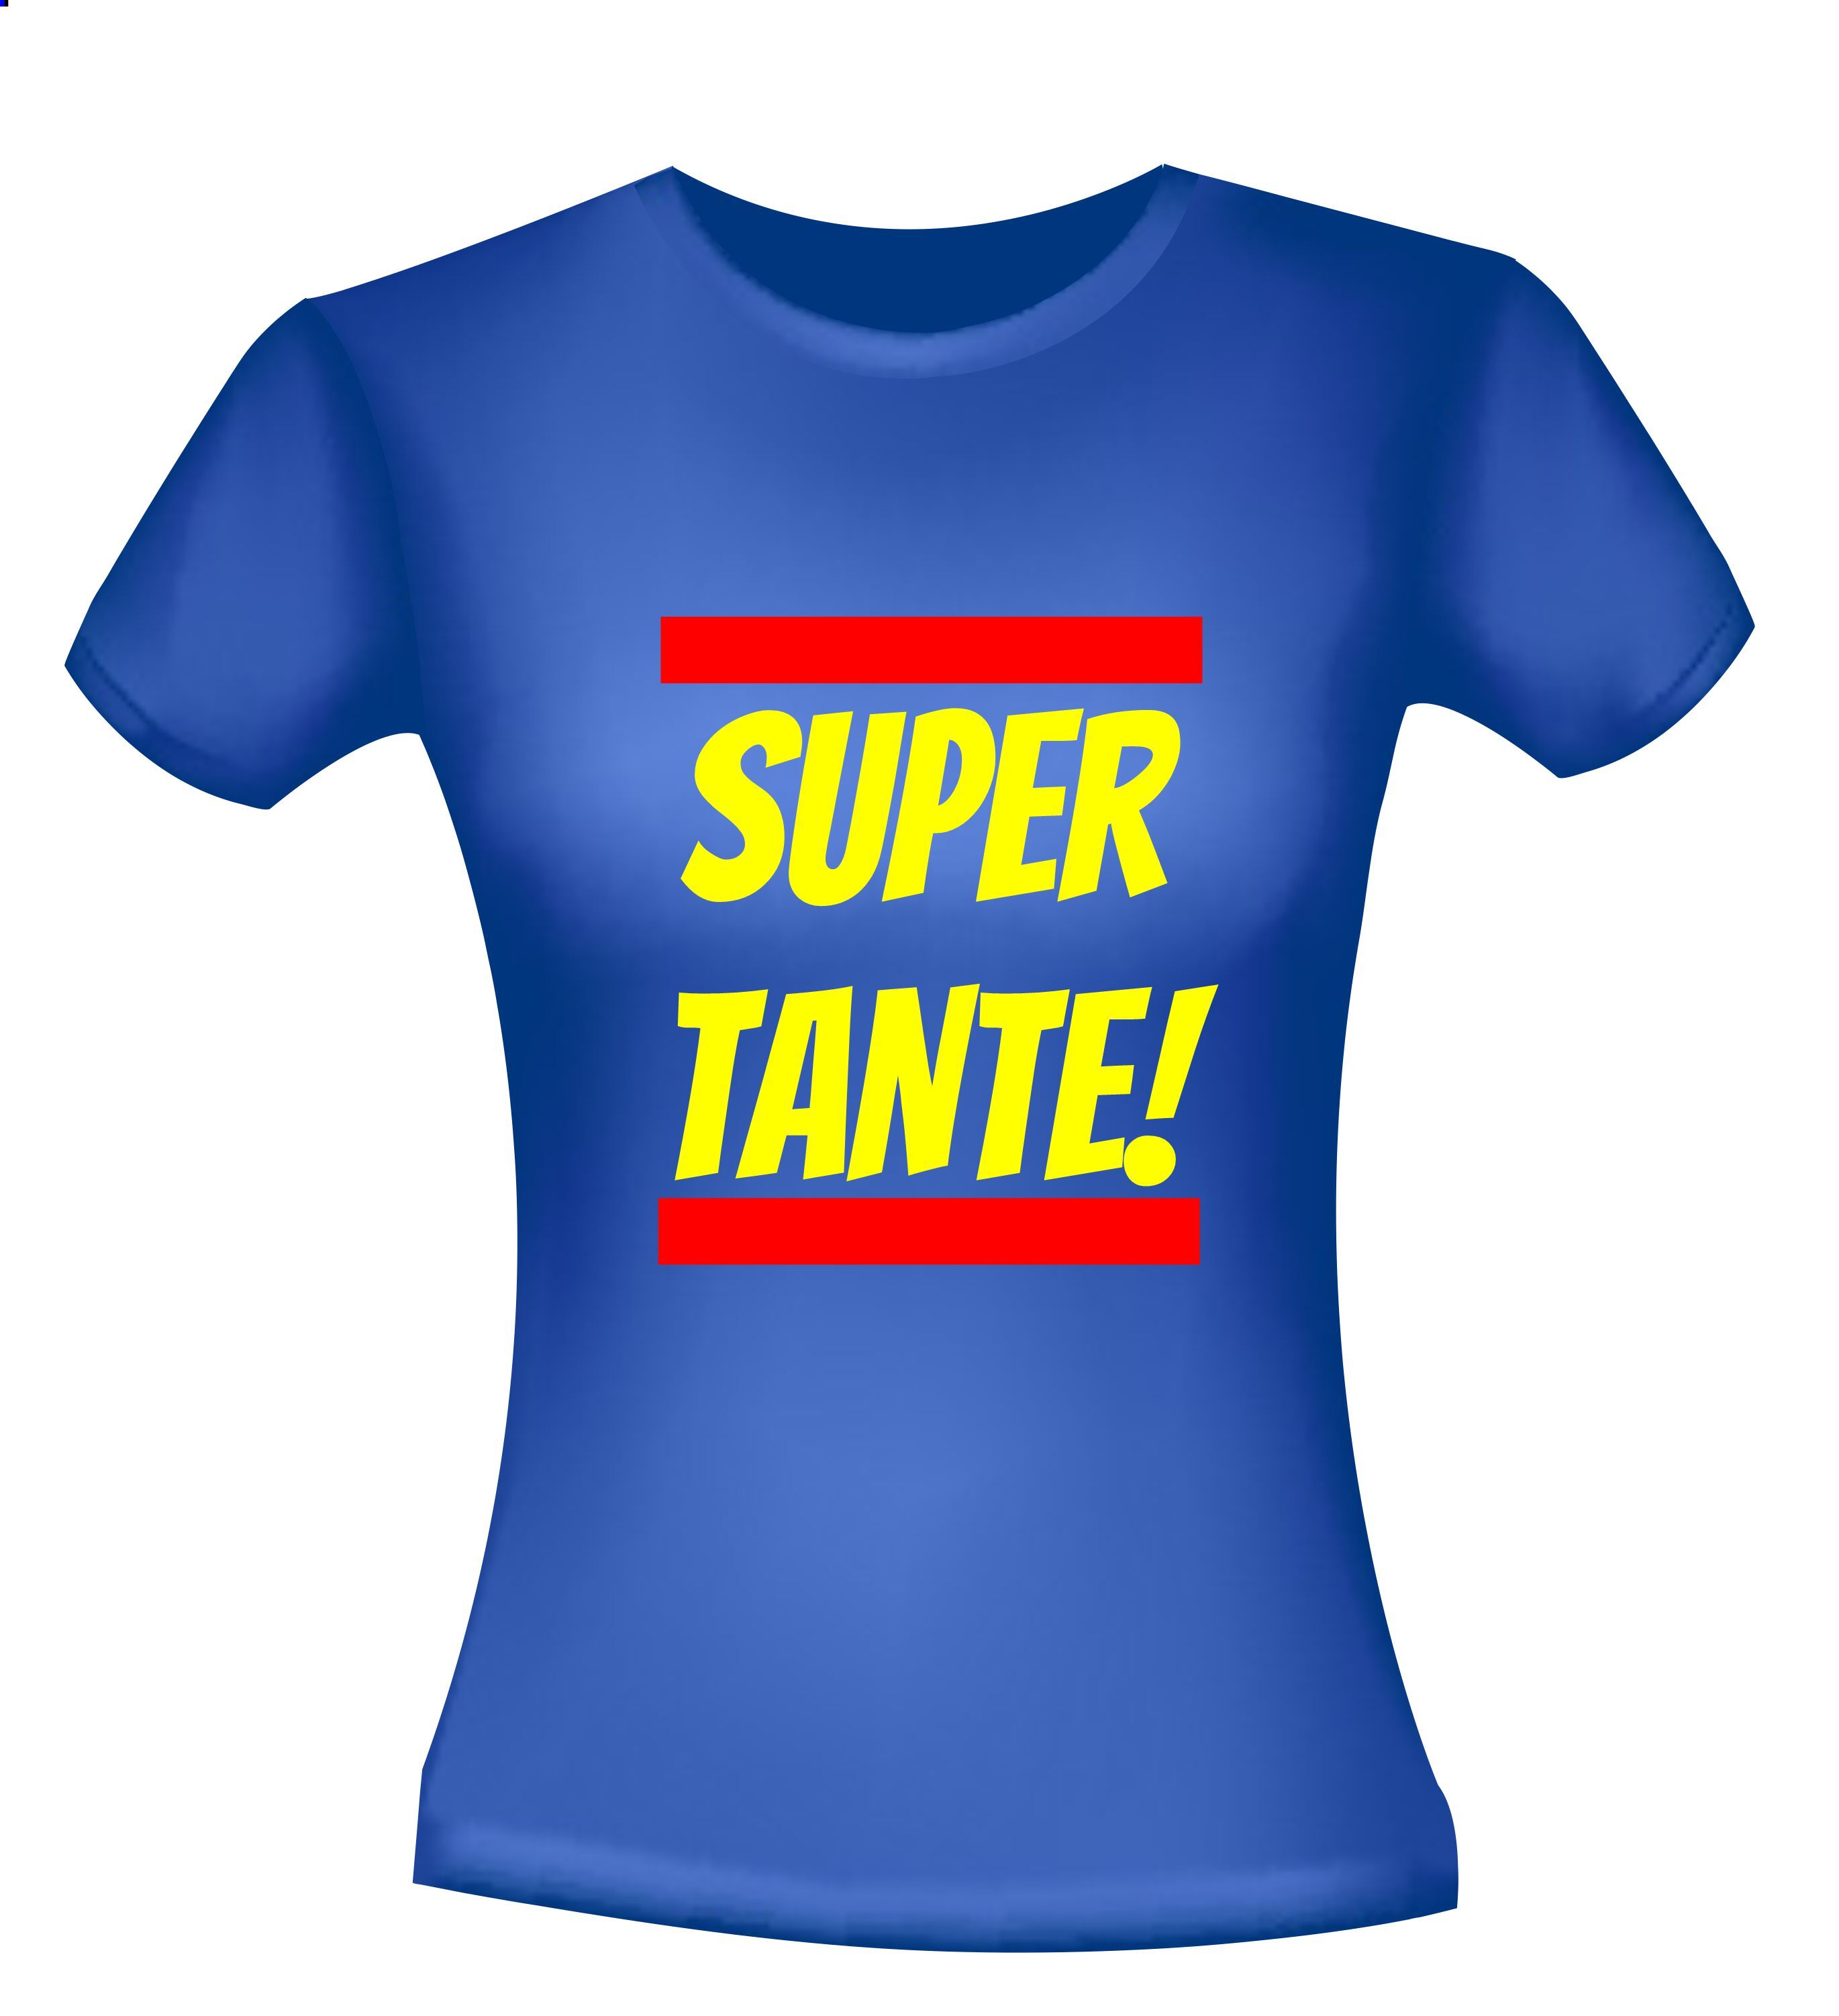 Super tante! T-shirt een leuk kado voor je tante